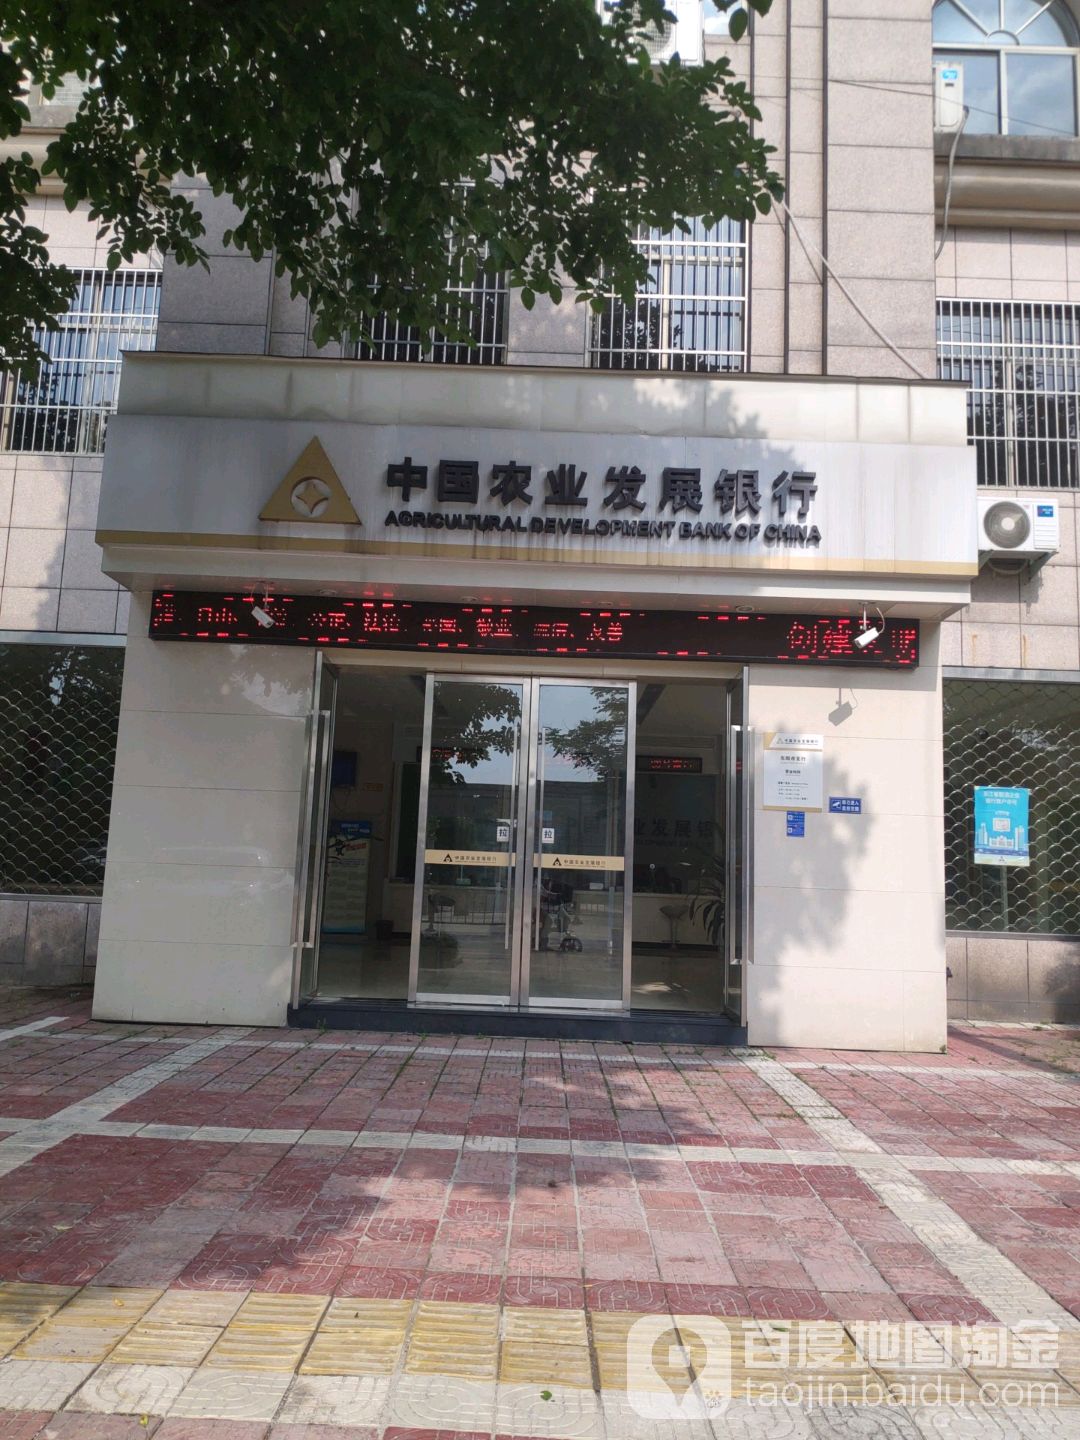 中国农村发展银行(东阳市支行)